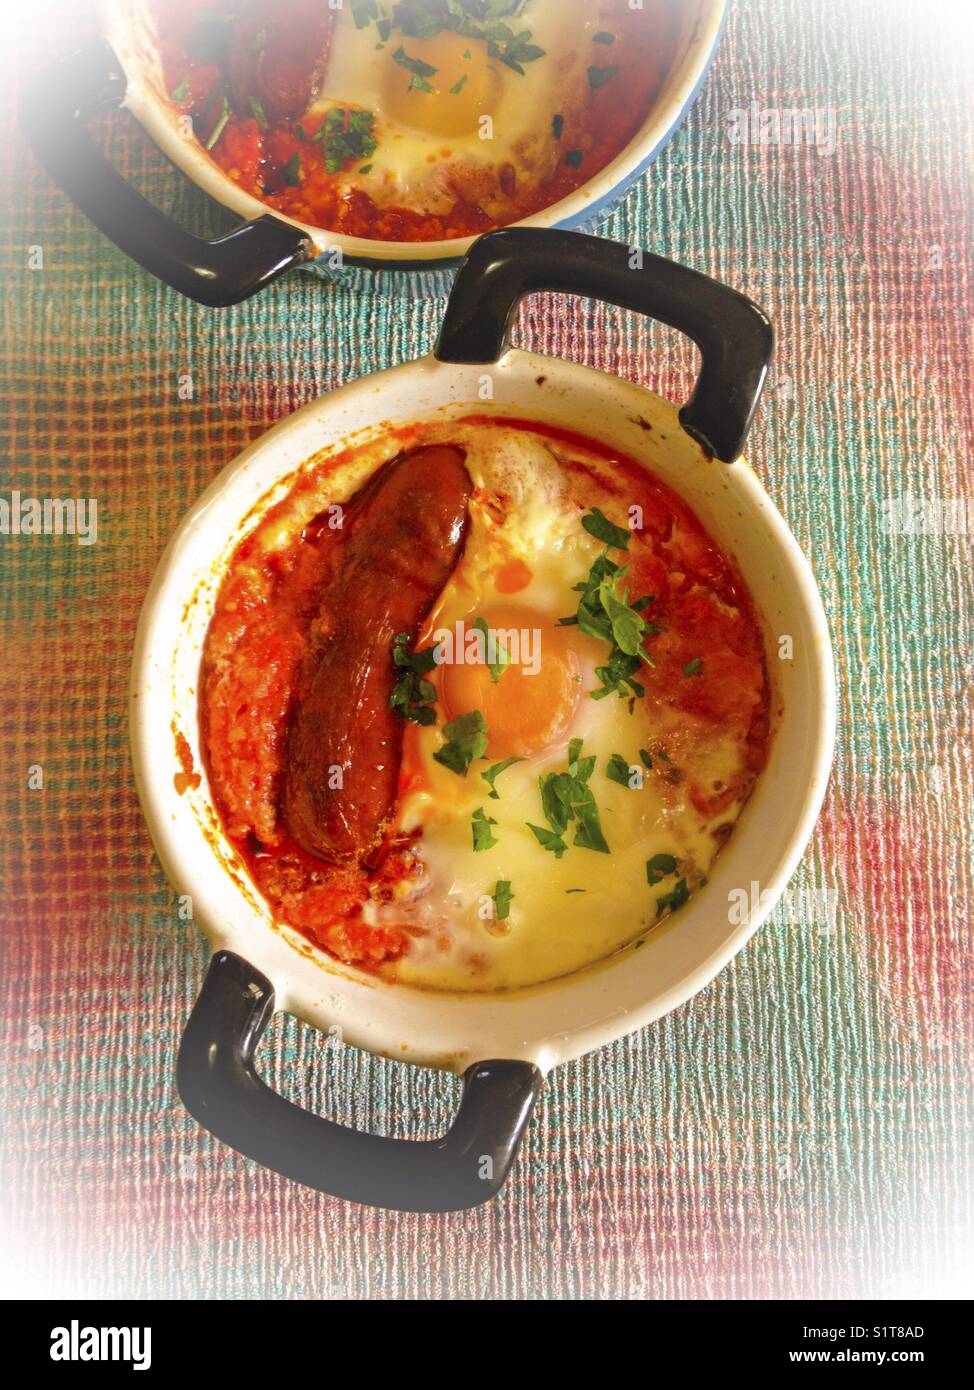 Baked chorizo and egg. Stock Photo